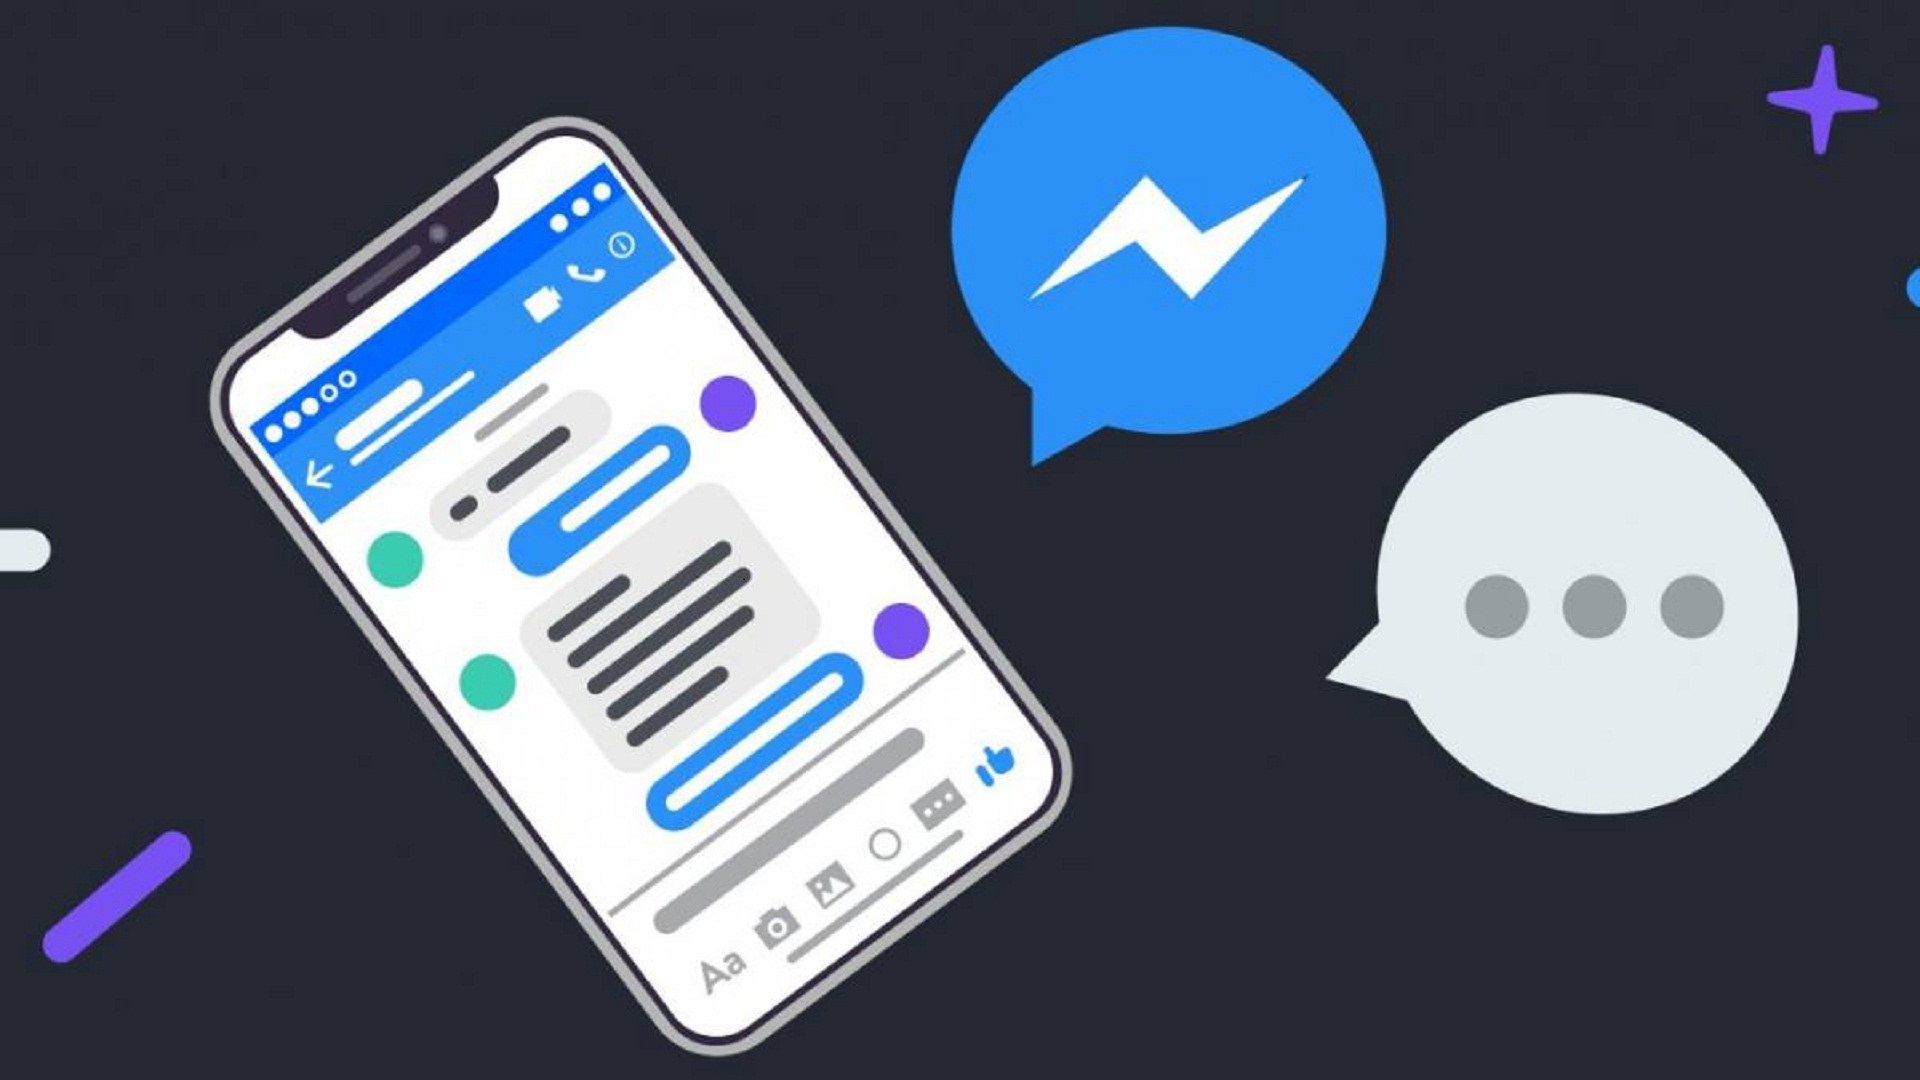 Ya no se podrá usar FB Messenger sin cuenta de Facebook